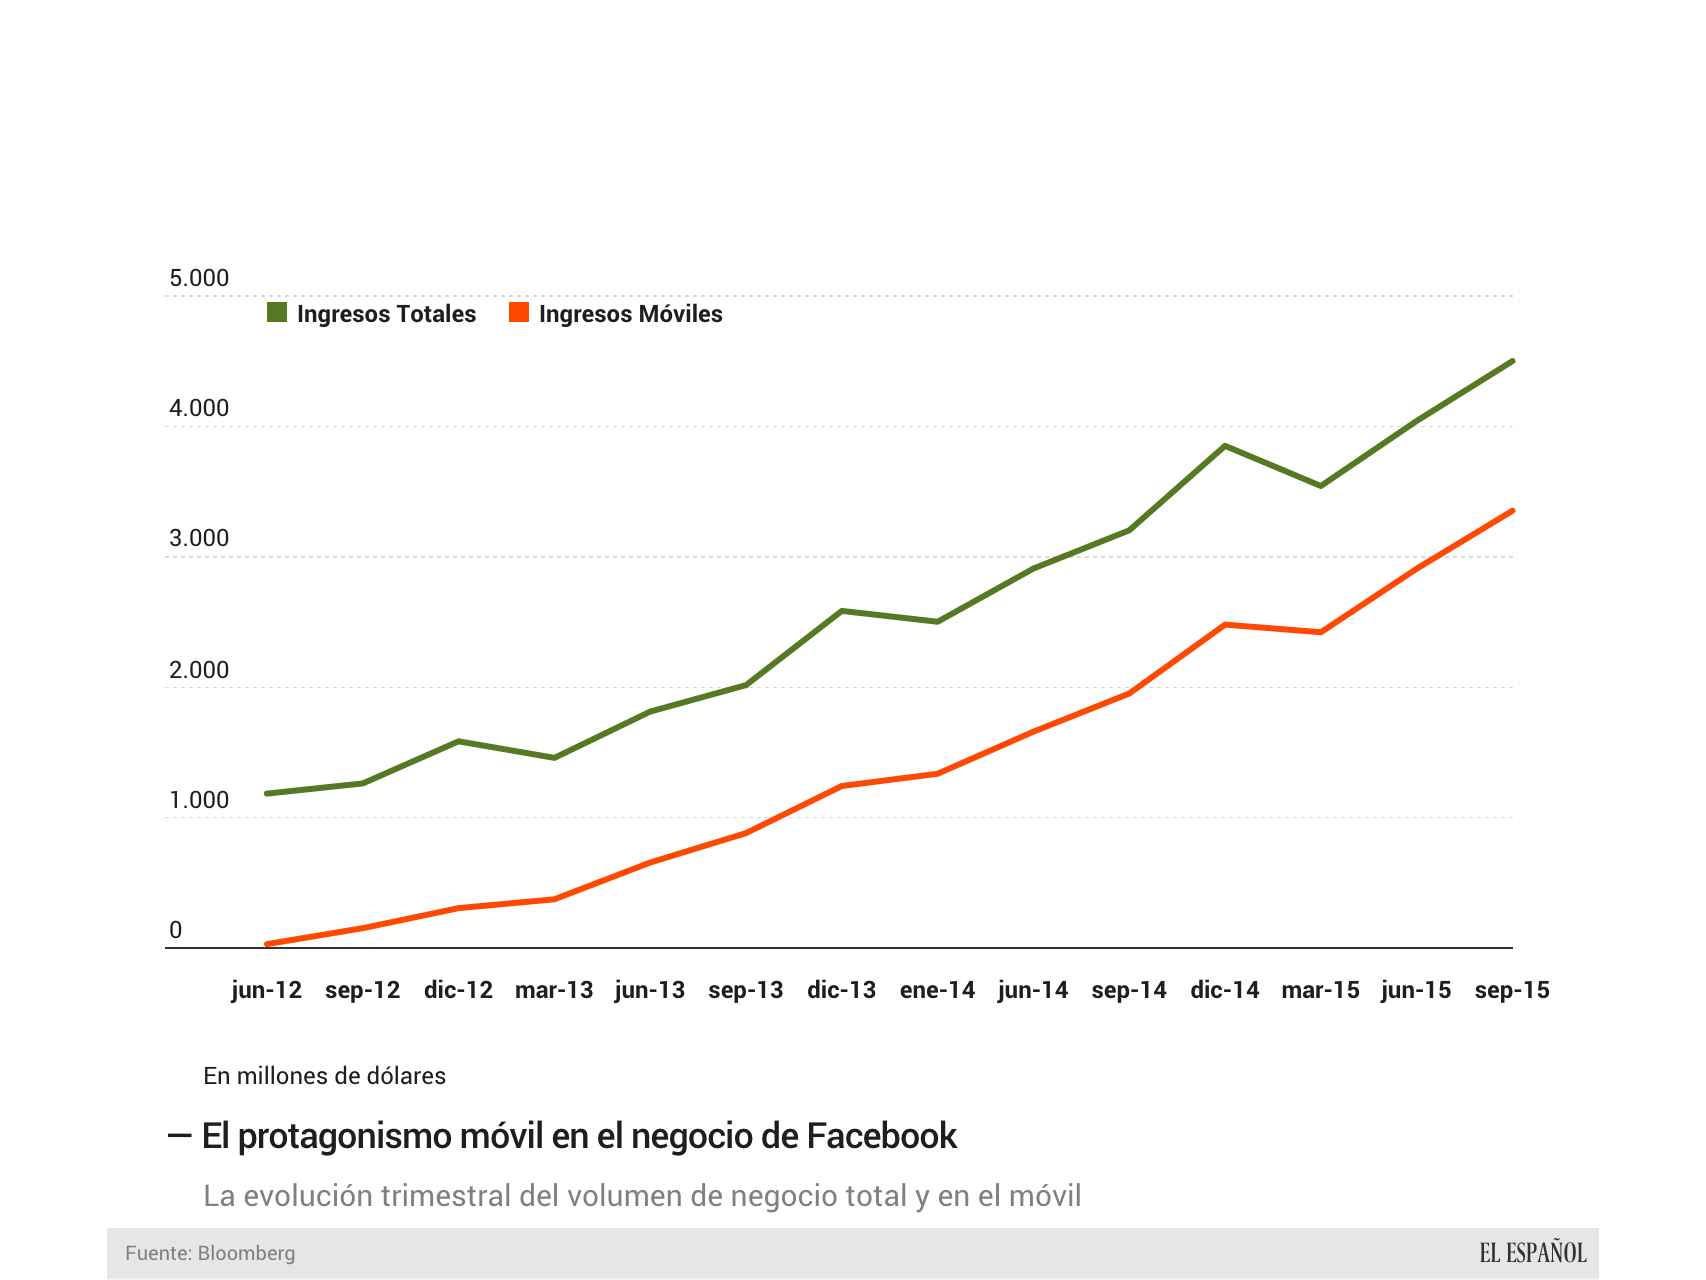 Las ventas en el móvil respecto al total en Facebook.